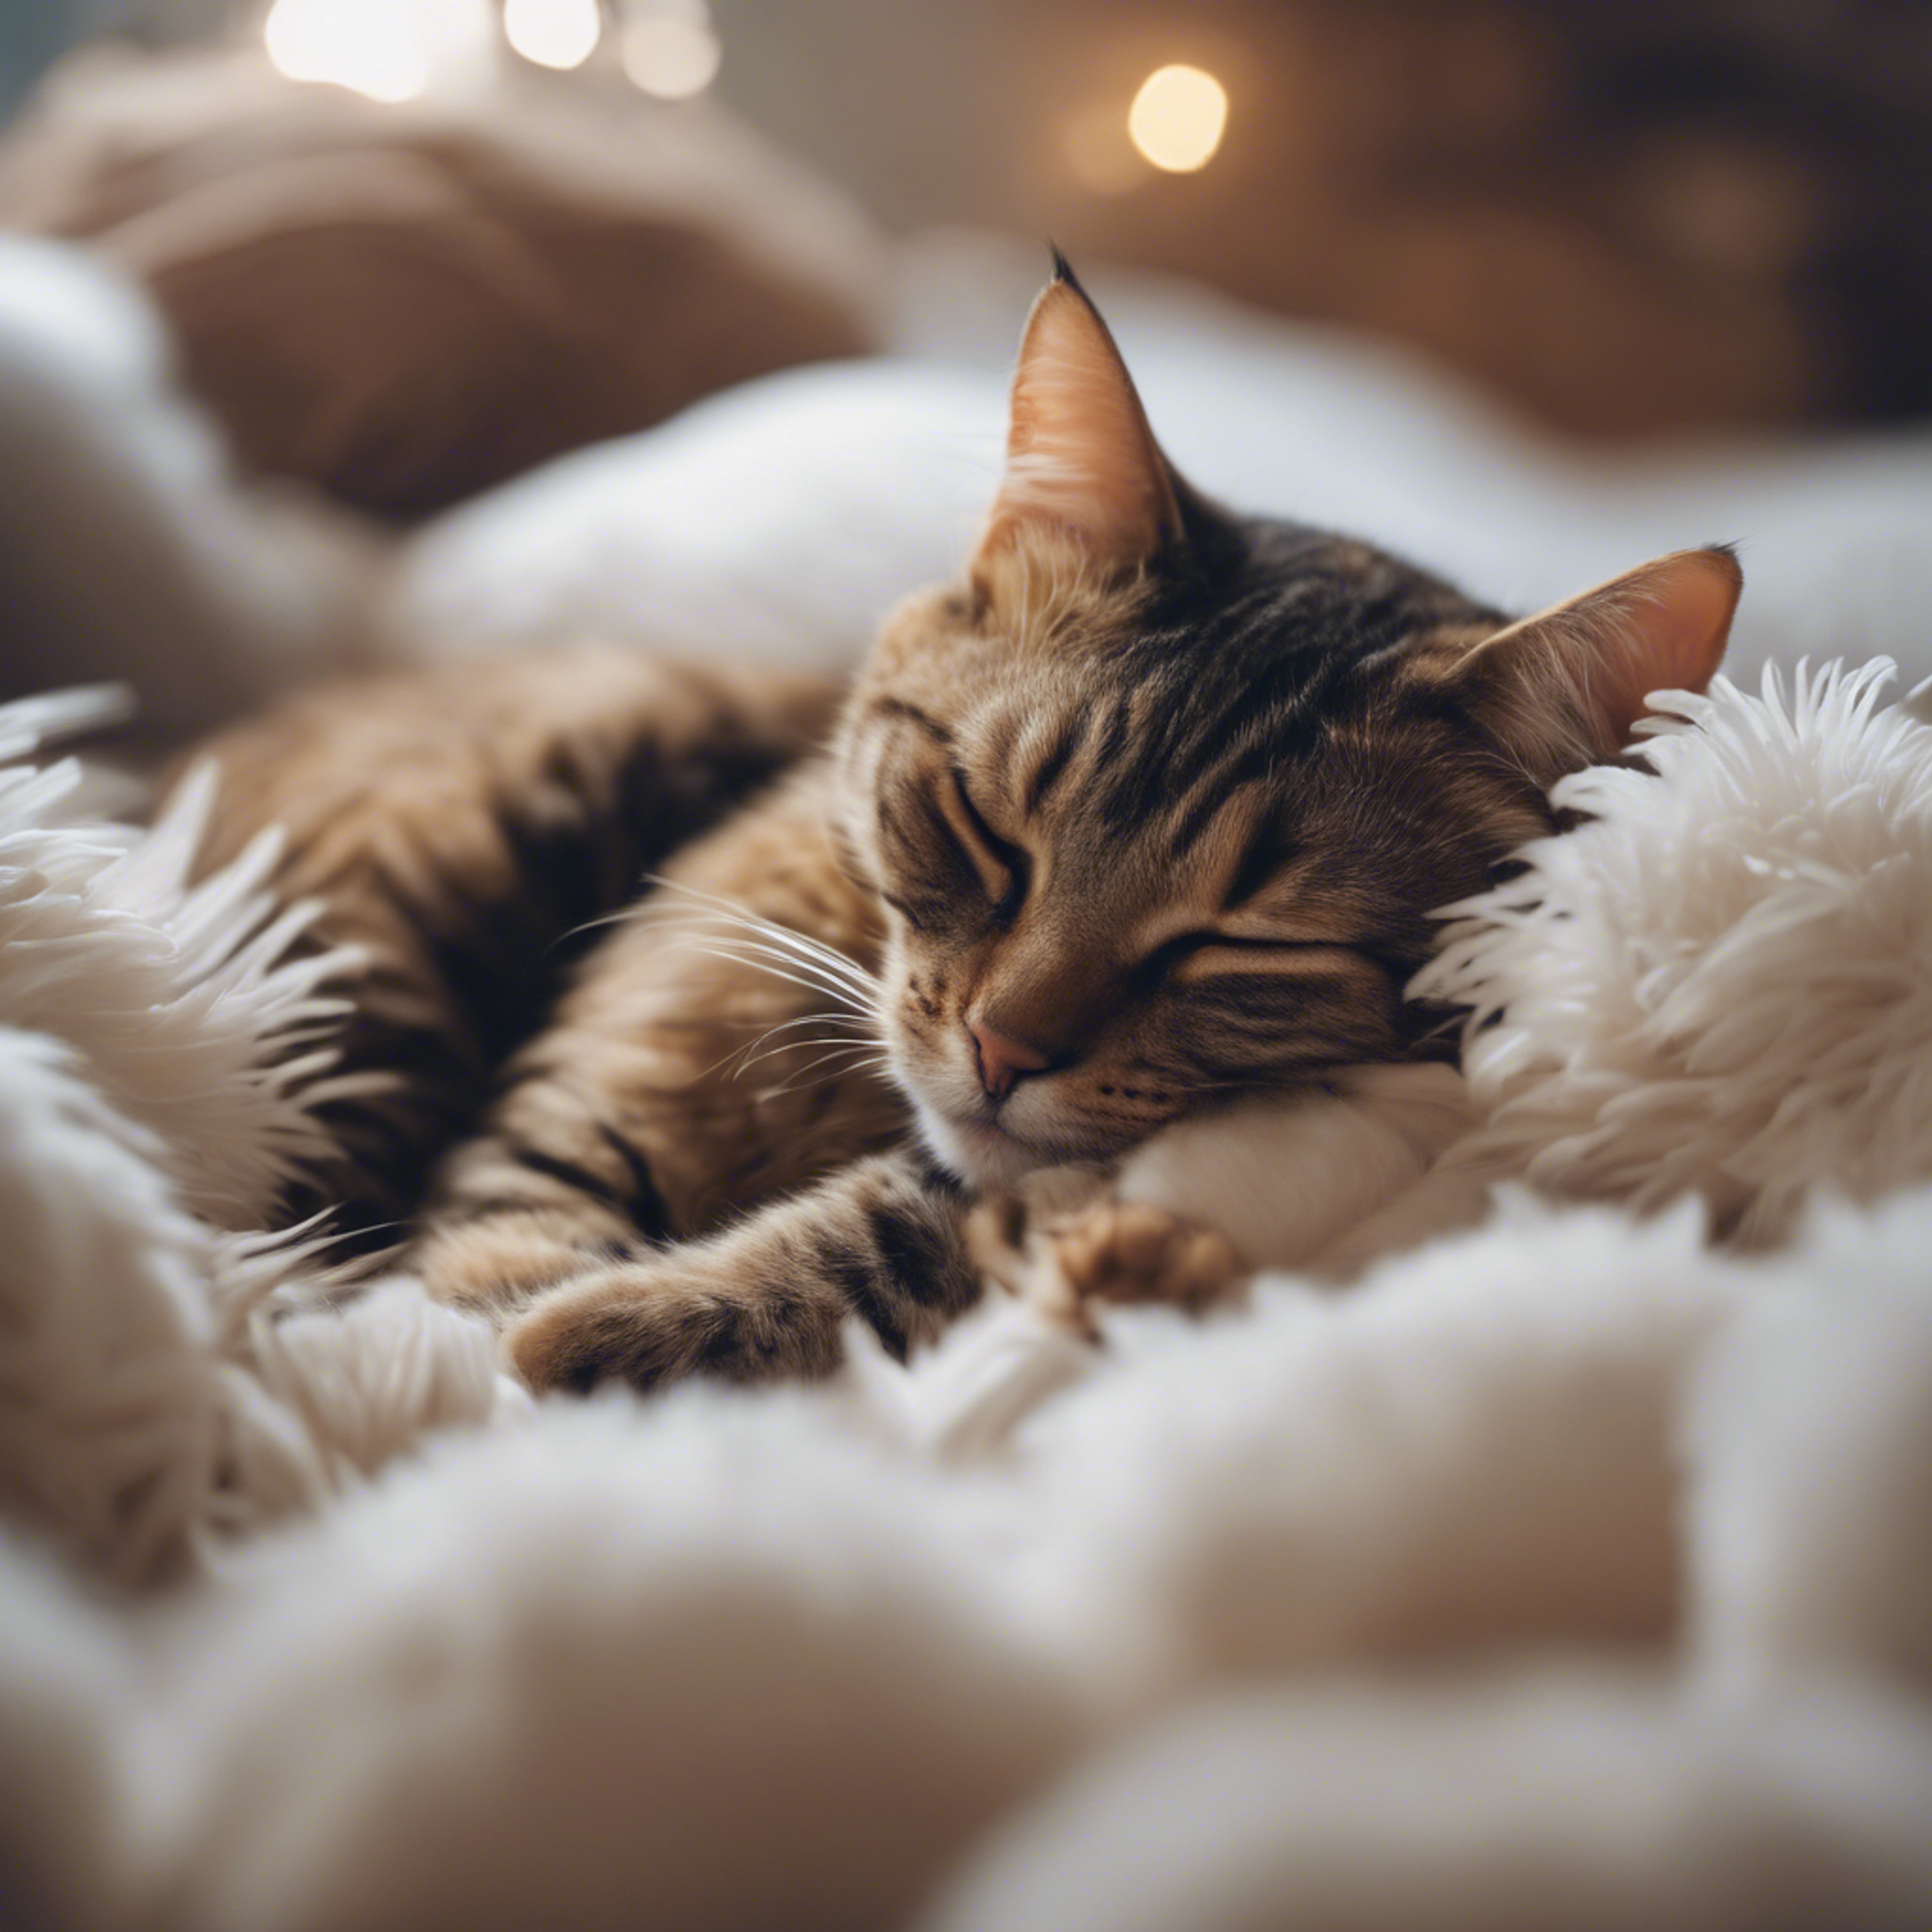 A cat sleeping soundly, completely submerged in a sea of cozy, fluffy pillows. Fondo de pantalla[9e78fe4df88a4e90bb06]